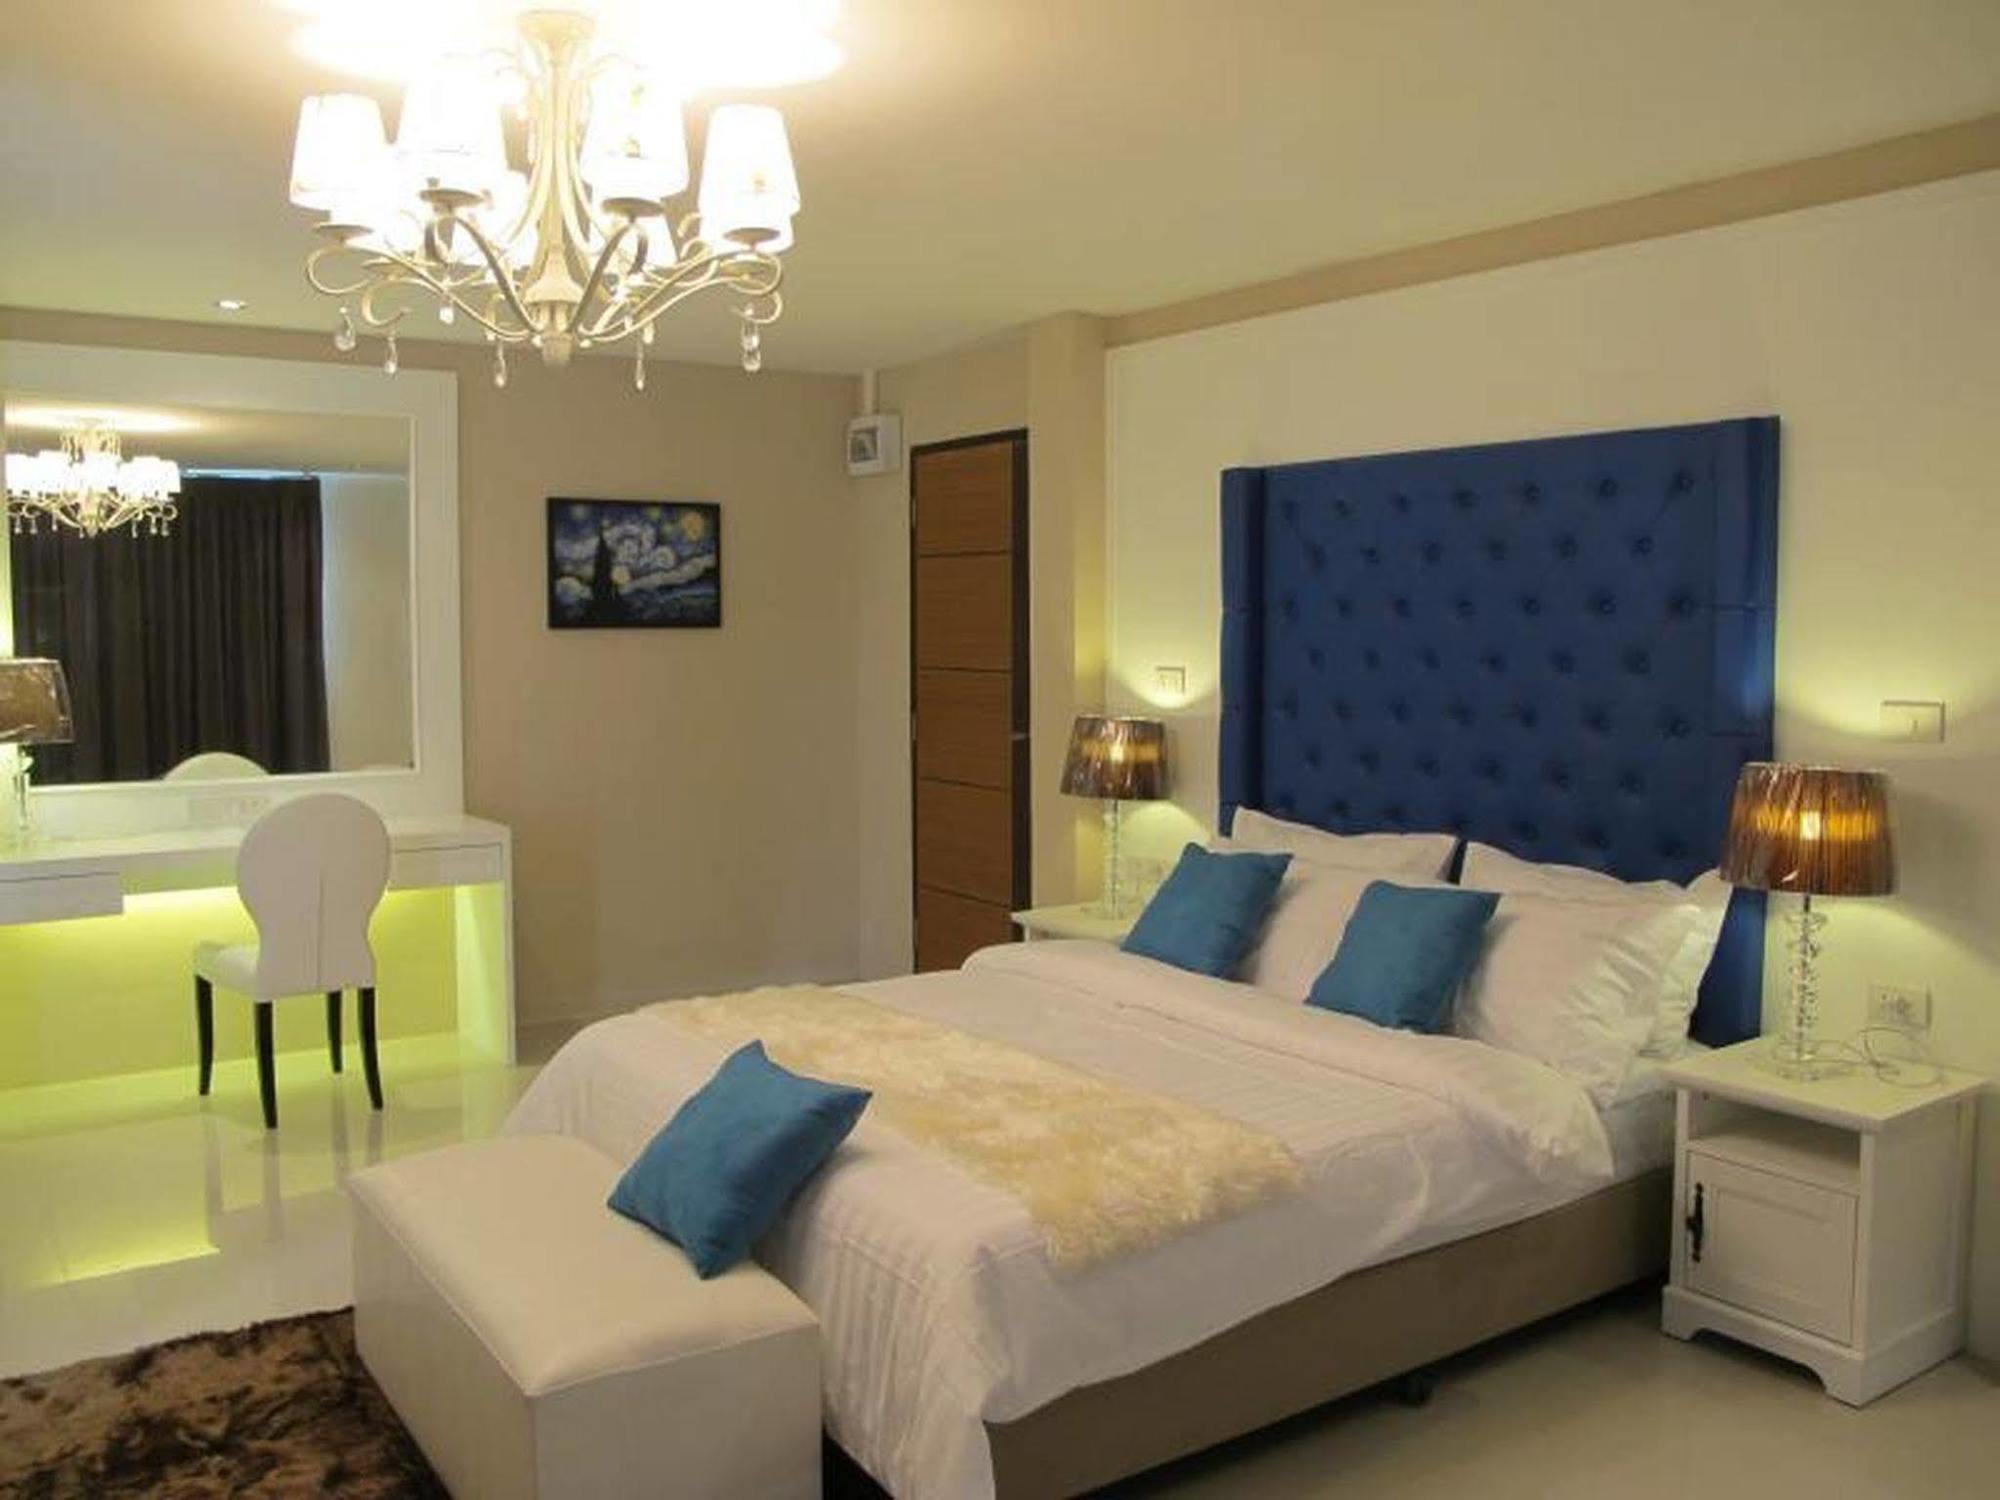 โรงแรม โรงแรมอินน์ จันท์ จันทบุรี 2* (ไทย) - จาก 674 THB | HOTELMIX